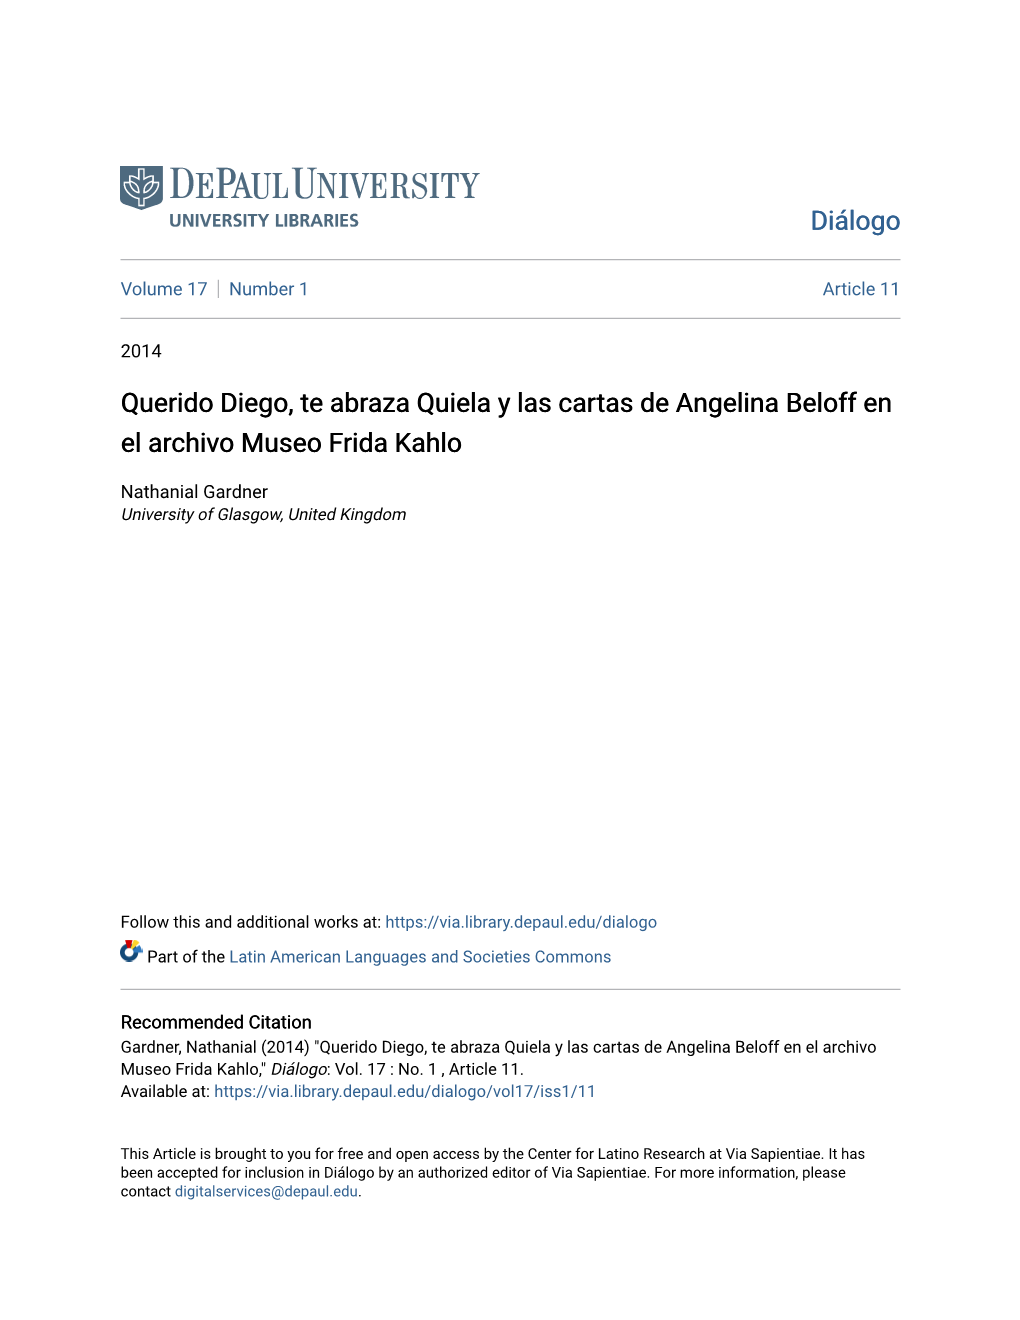 Querido Diego, Te Abraza Quiela Y Las Cartas De Angelina Beloff En El Archivo Museo Frida Kahlo